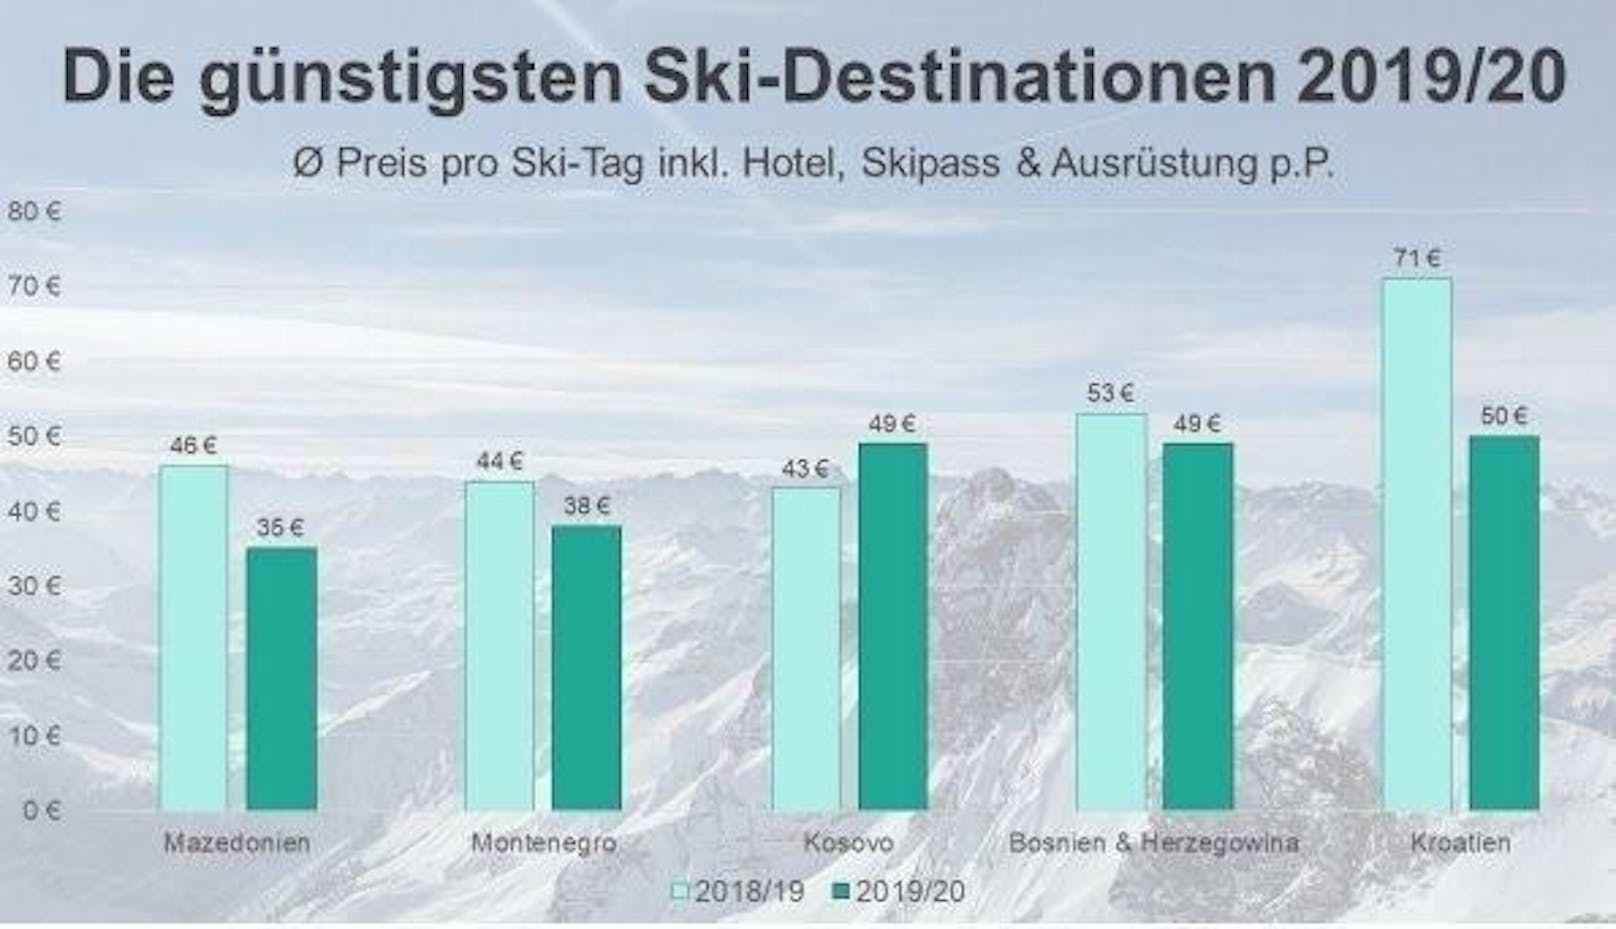 Die günstigsten Ski-Destinationen im Überblick